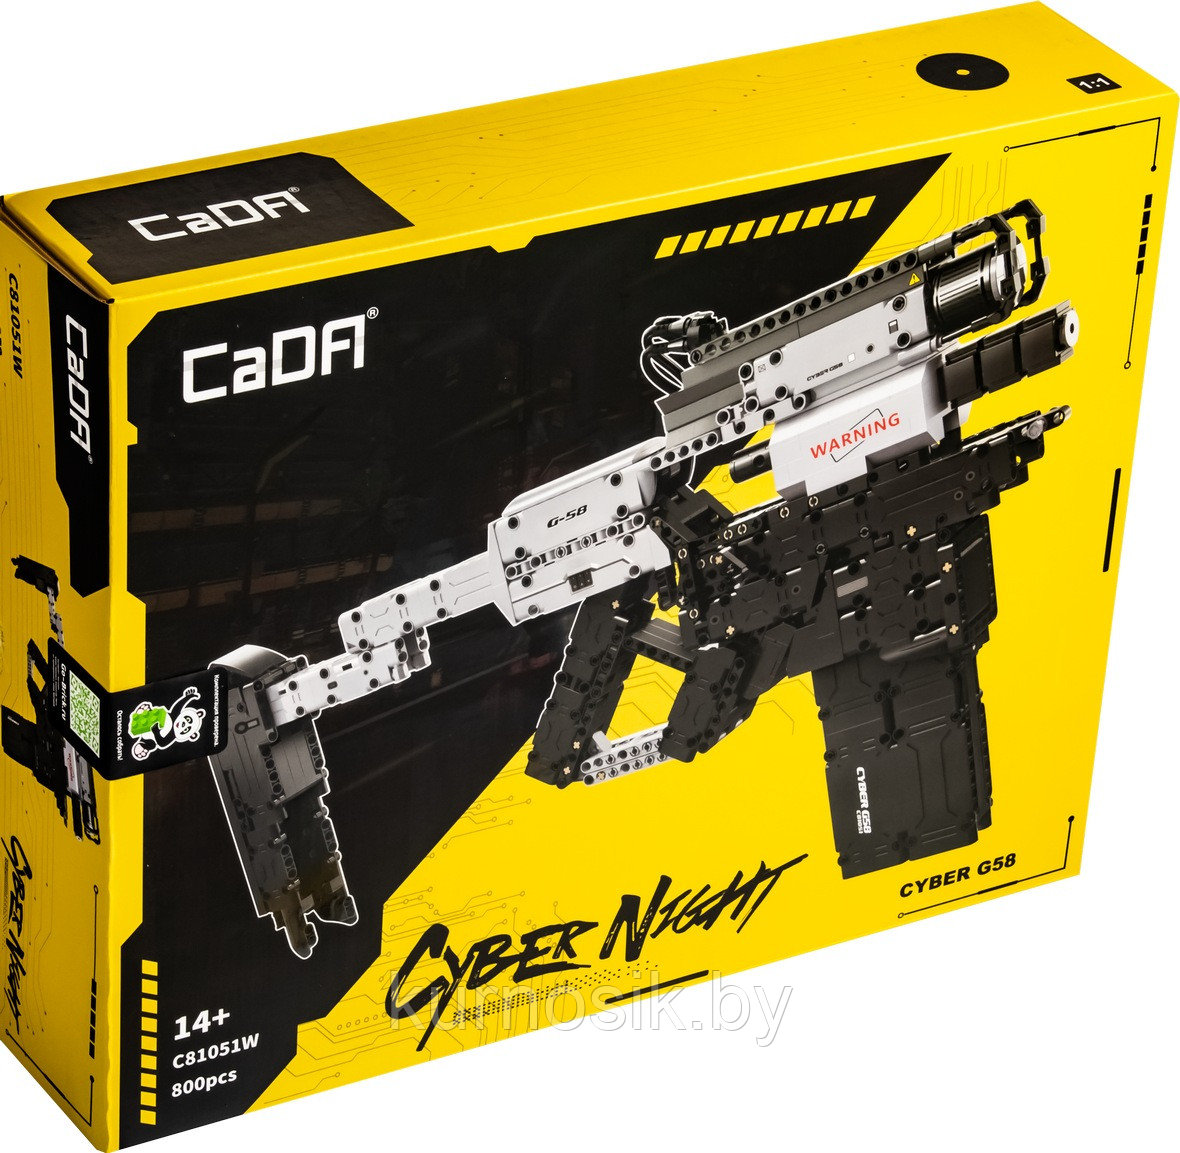 Конструктор C81051W CADA Пистолет-пулемет G58, 800 деталей